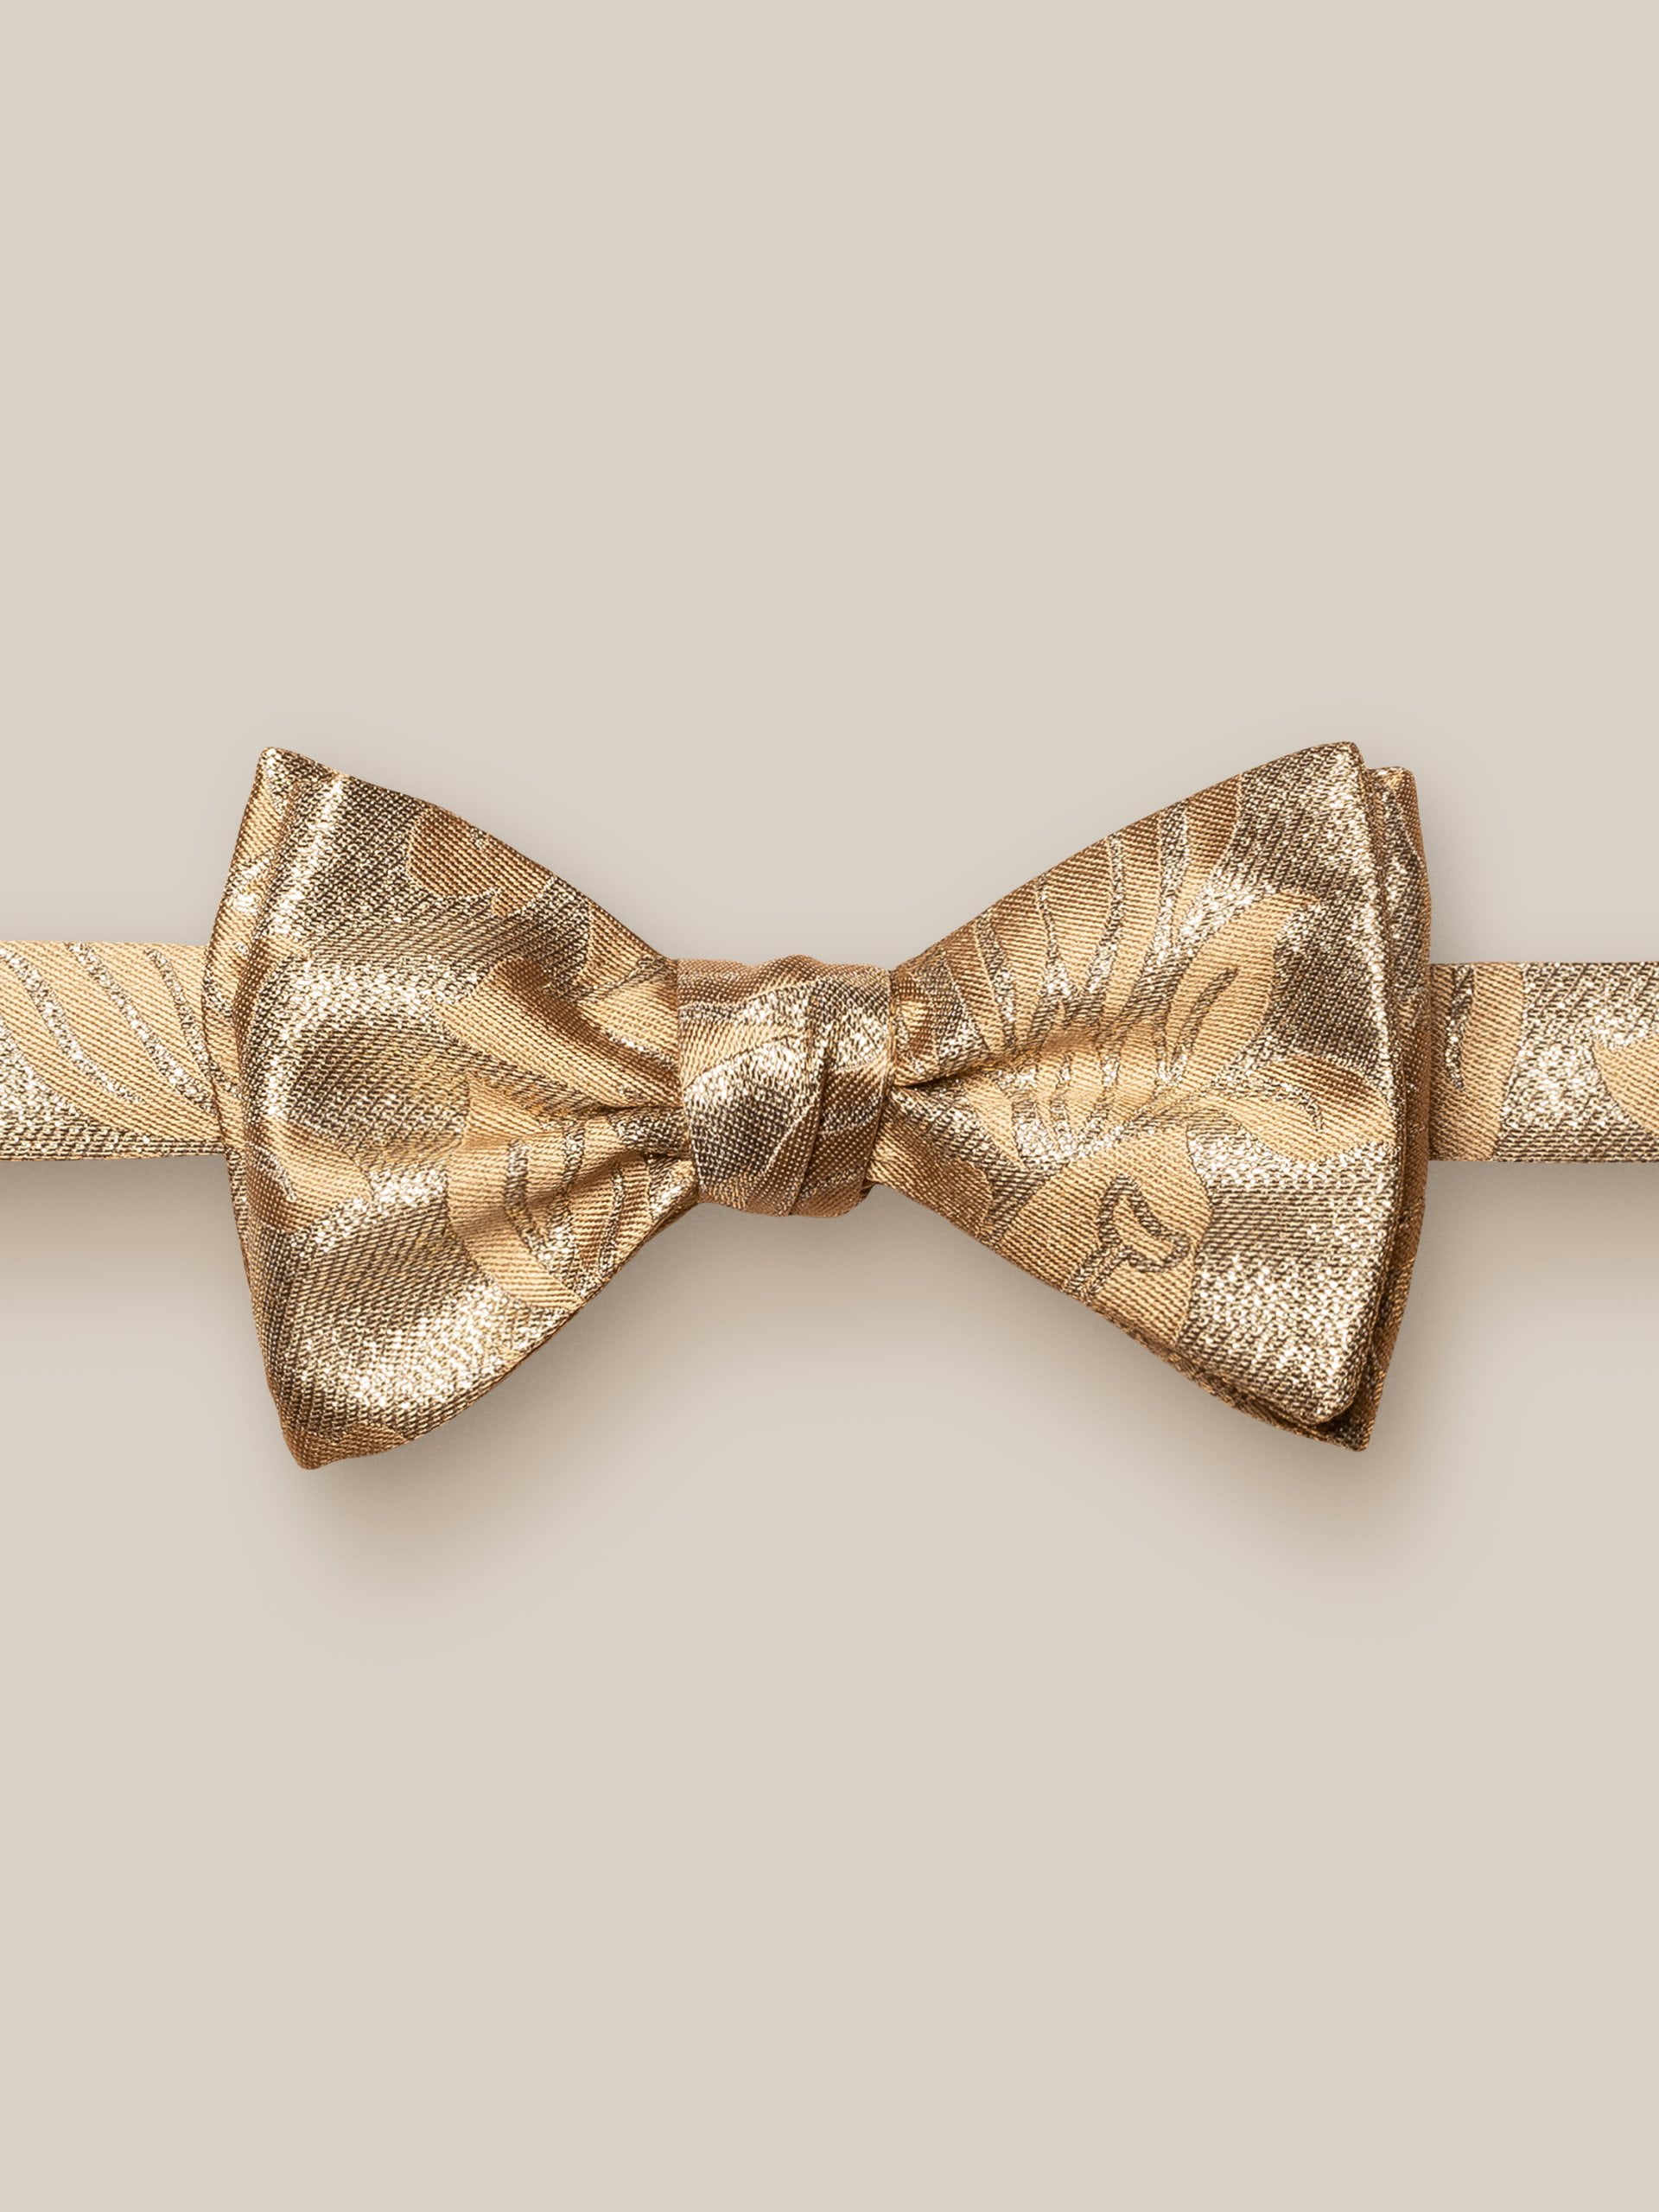 eton shirts golden floral silk bowtie — ready tied ready tiedblack silk bow tie – ready tied (copy)